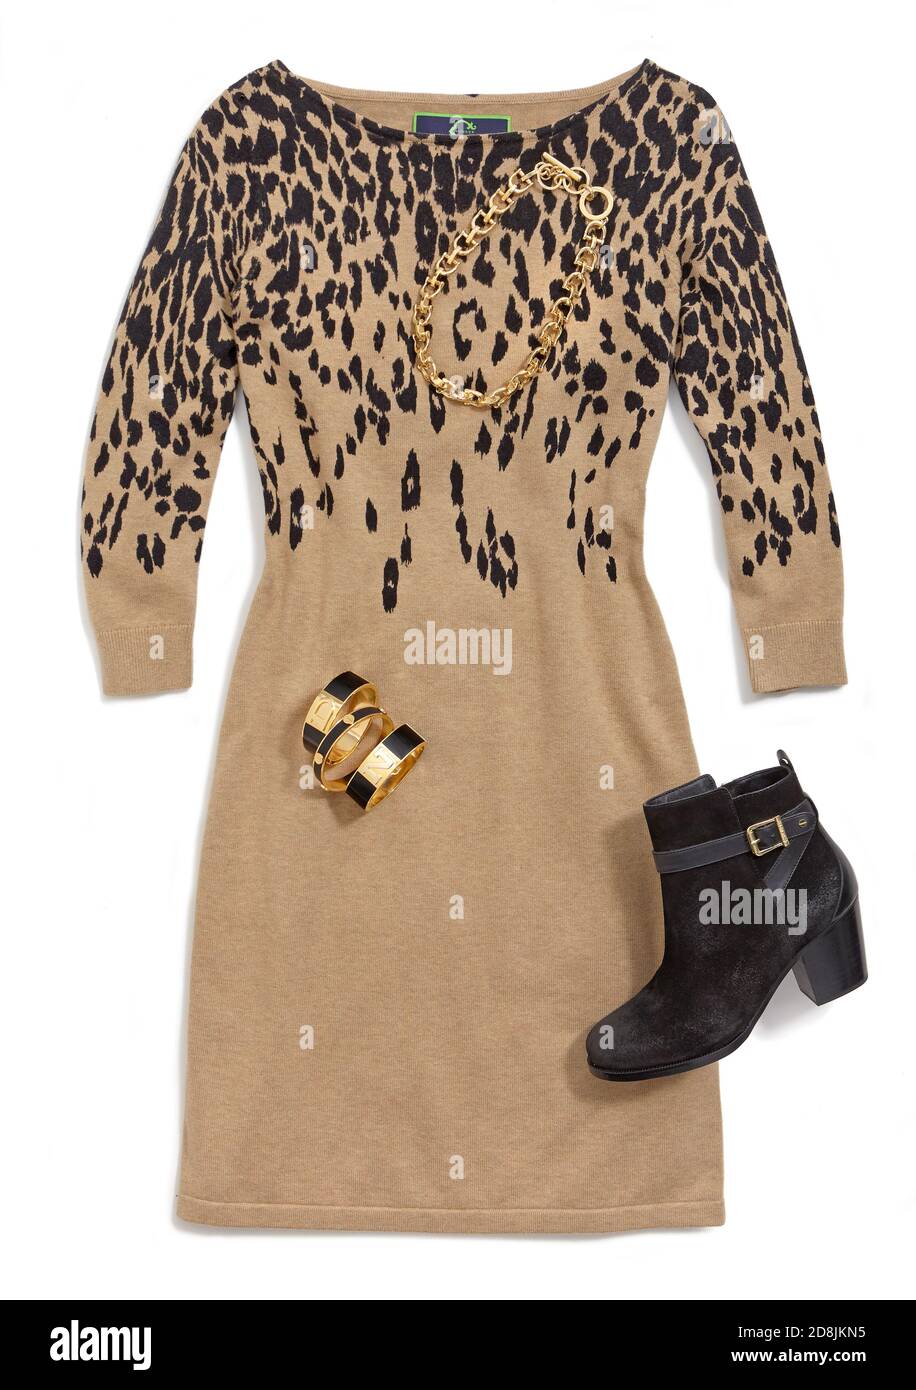 Leopard Strickkleid Outfit mit schwarzem Stiefelette und Goldschmuck aus C.Wonder's Look Book. Fotografiert auf weißem Hintergrund Stockfoto